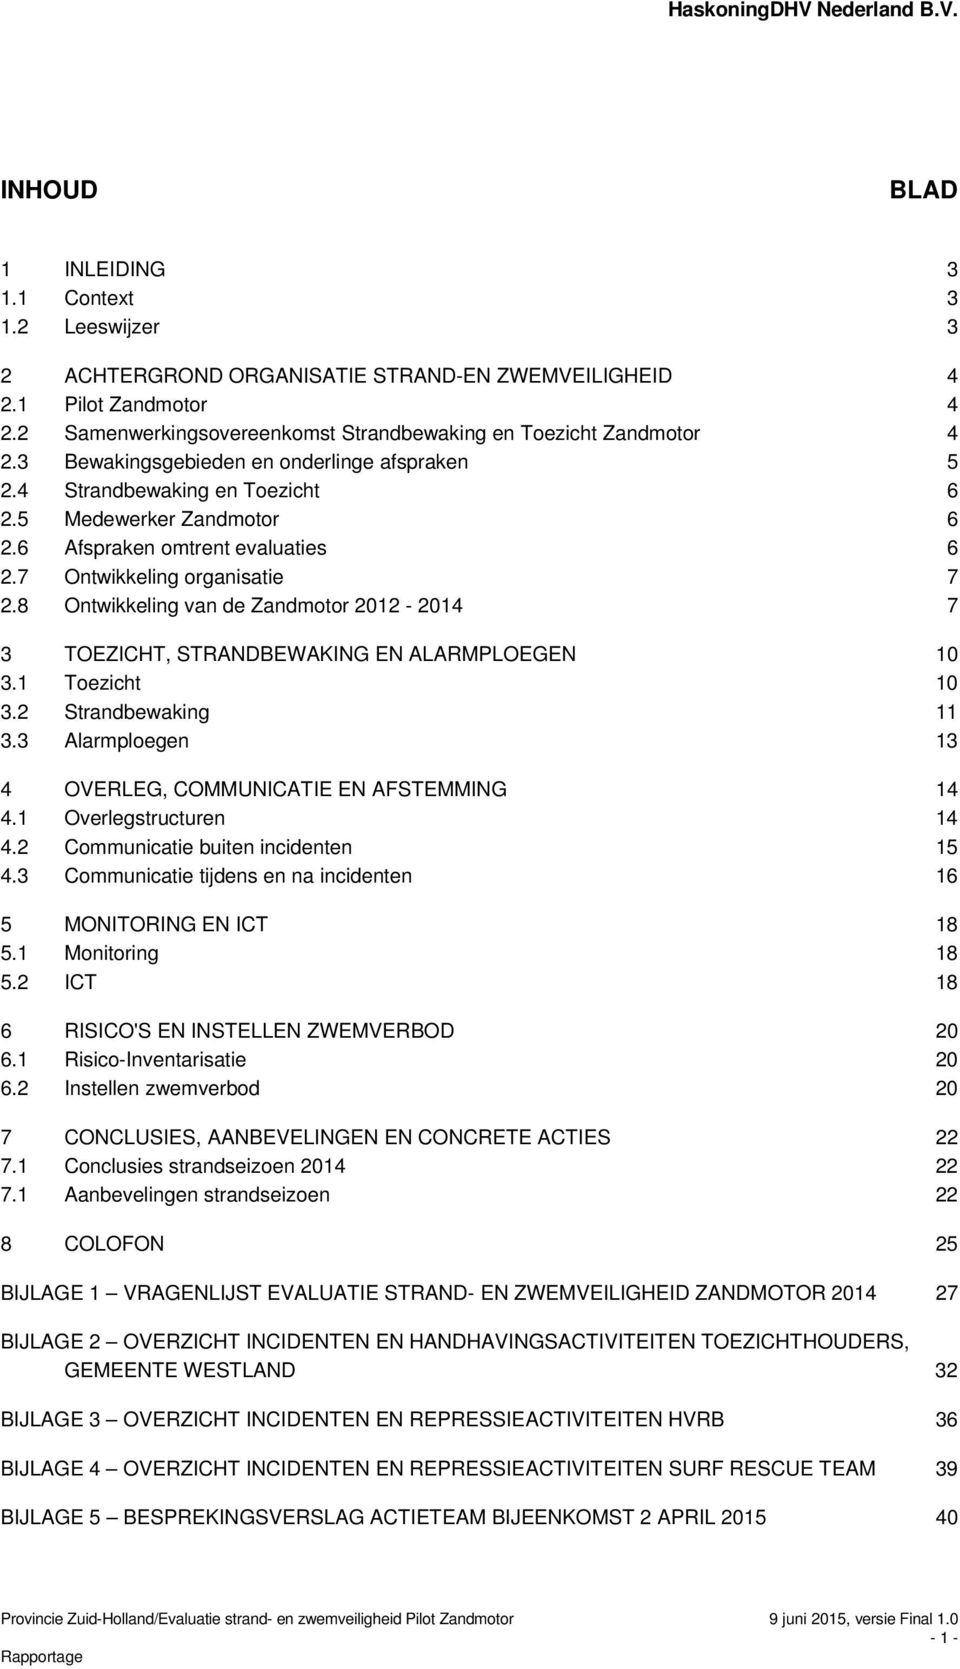 6 Afspraken omtrent evaluaties 6 2.7 Ontwikkeling organisatie 7 2.8 Ontwikkeling van de Zandmotor 2012-2014 7 3 TOEZICHT, STRANDBEWAKING EN ALARMPLOEGEN 10 3.1 Toezicht 10 3.2 Strandbewaking 11 3.